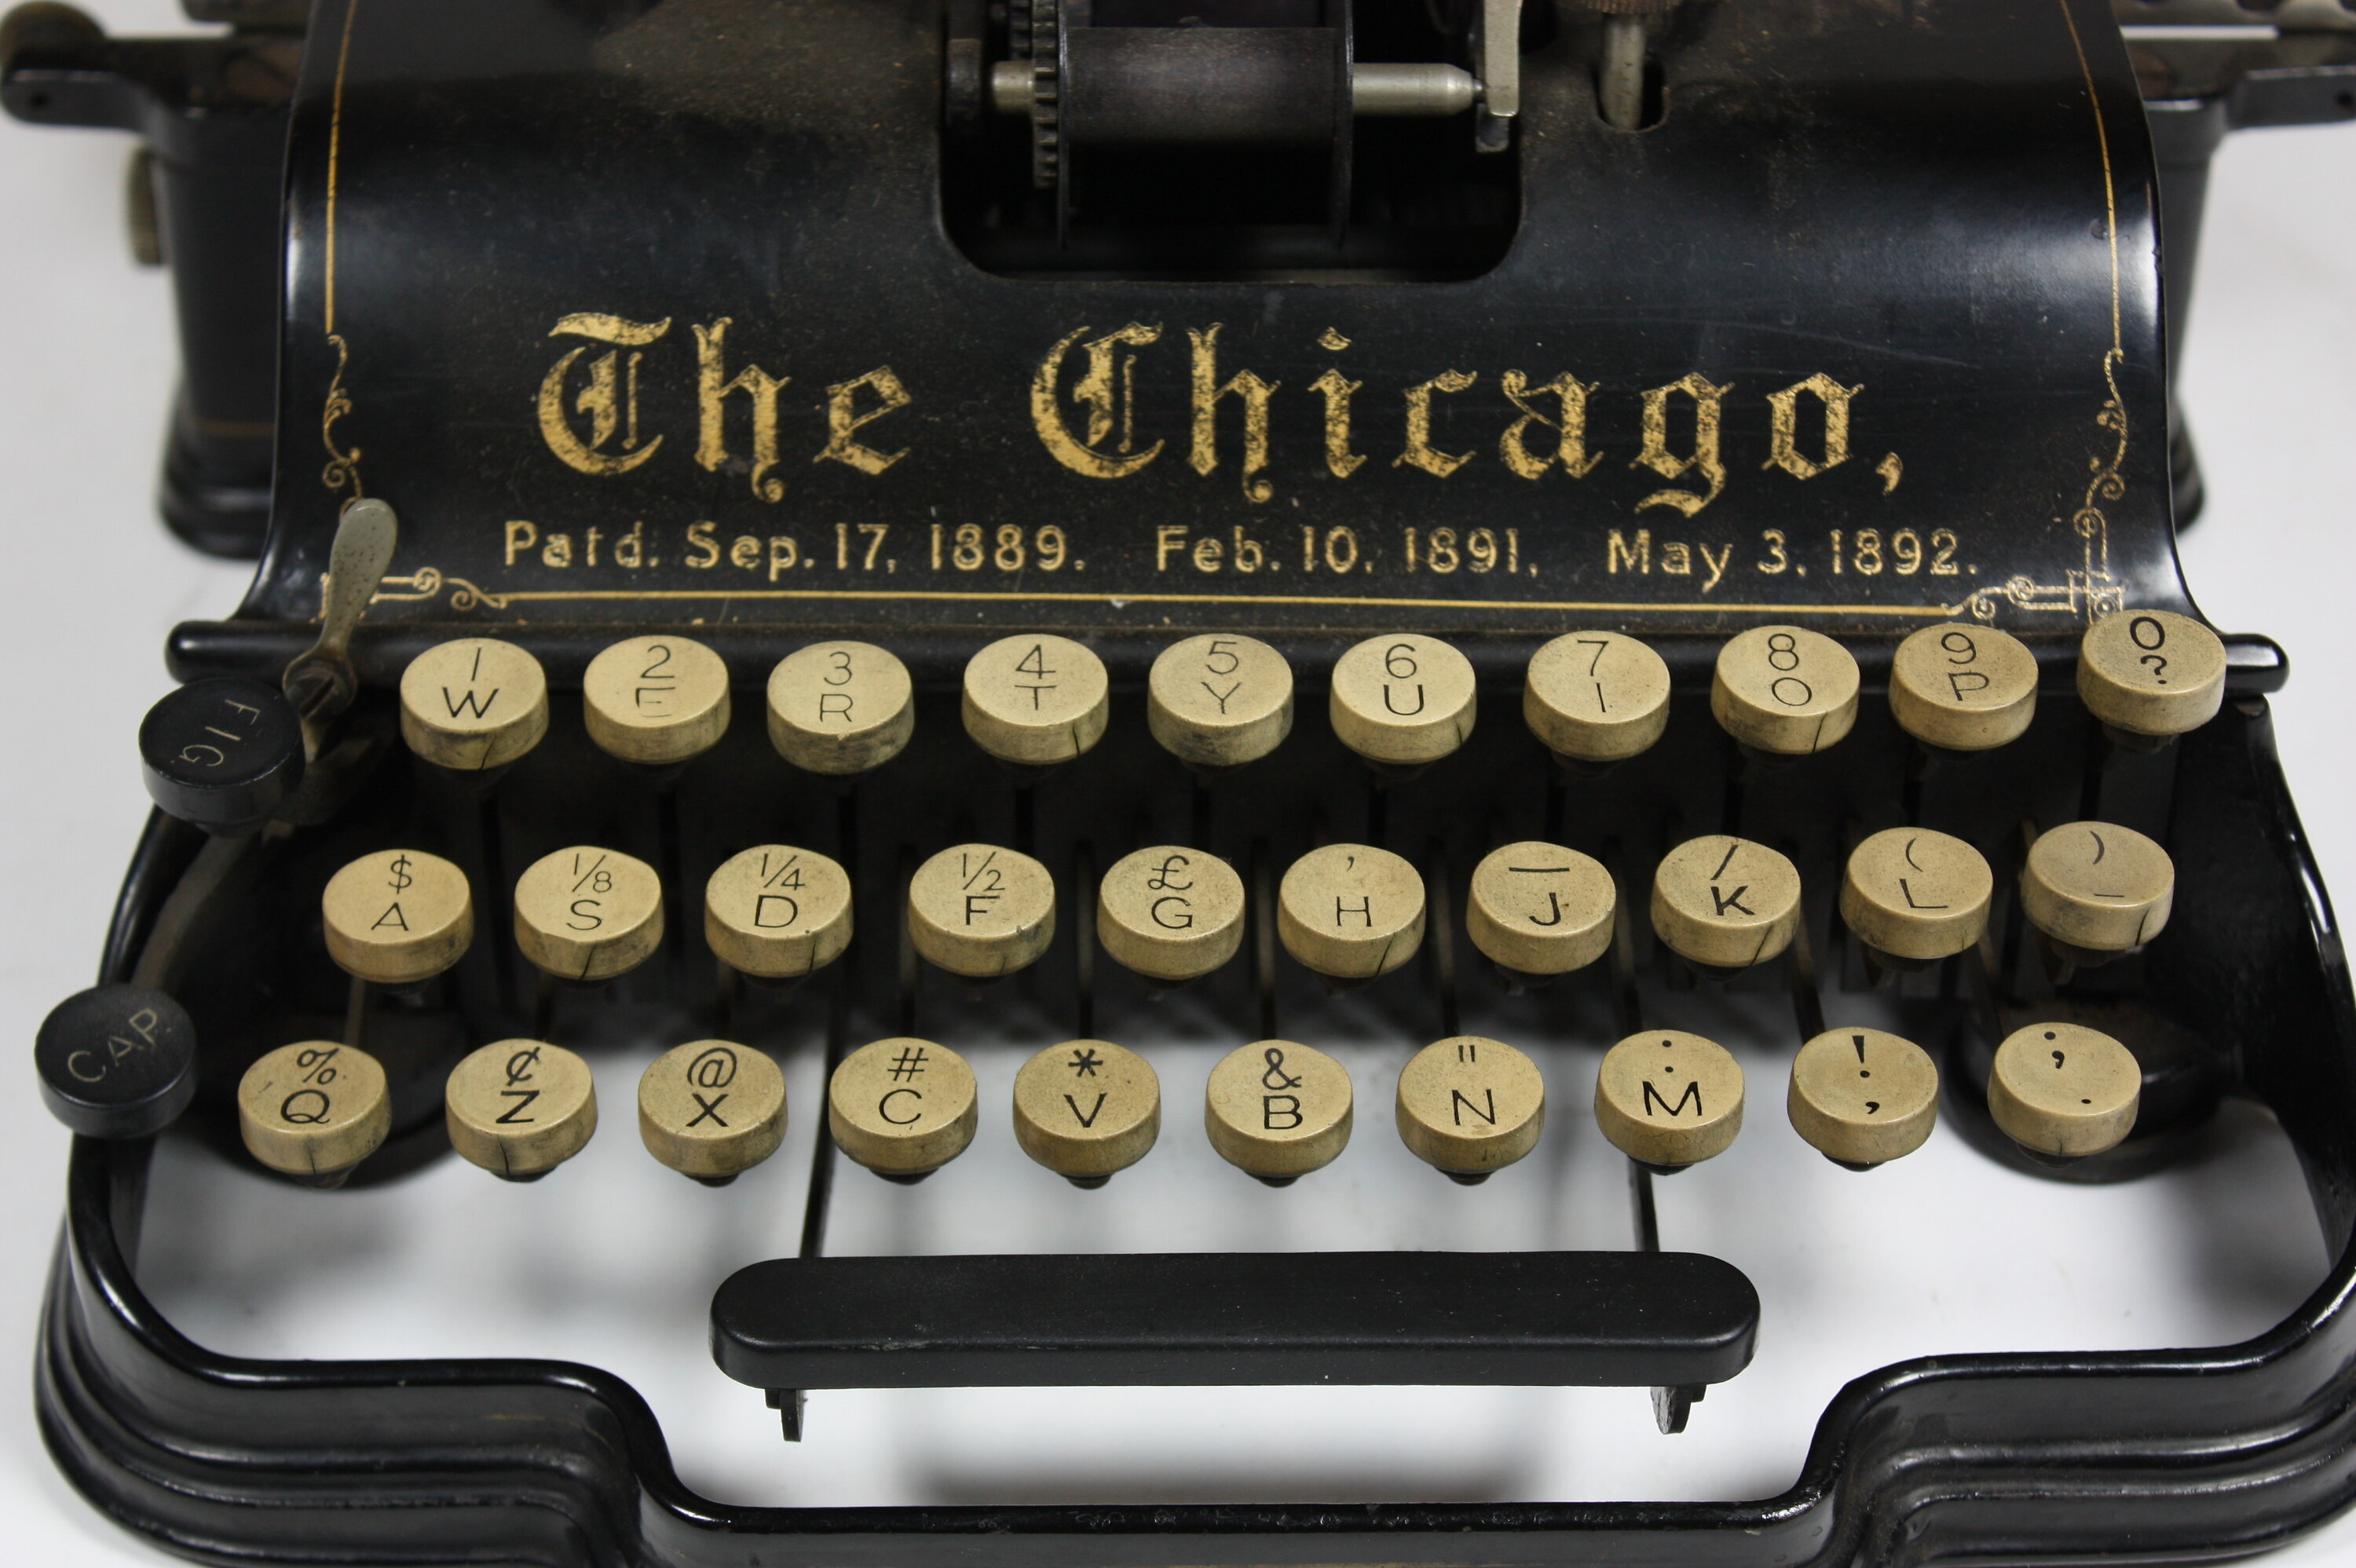 Typewriter - Chicago Writing Machine Co., 1890s